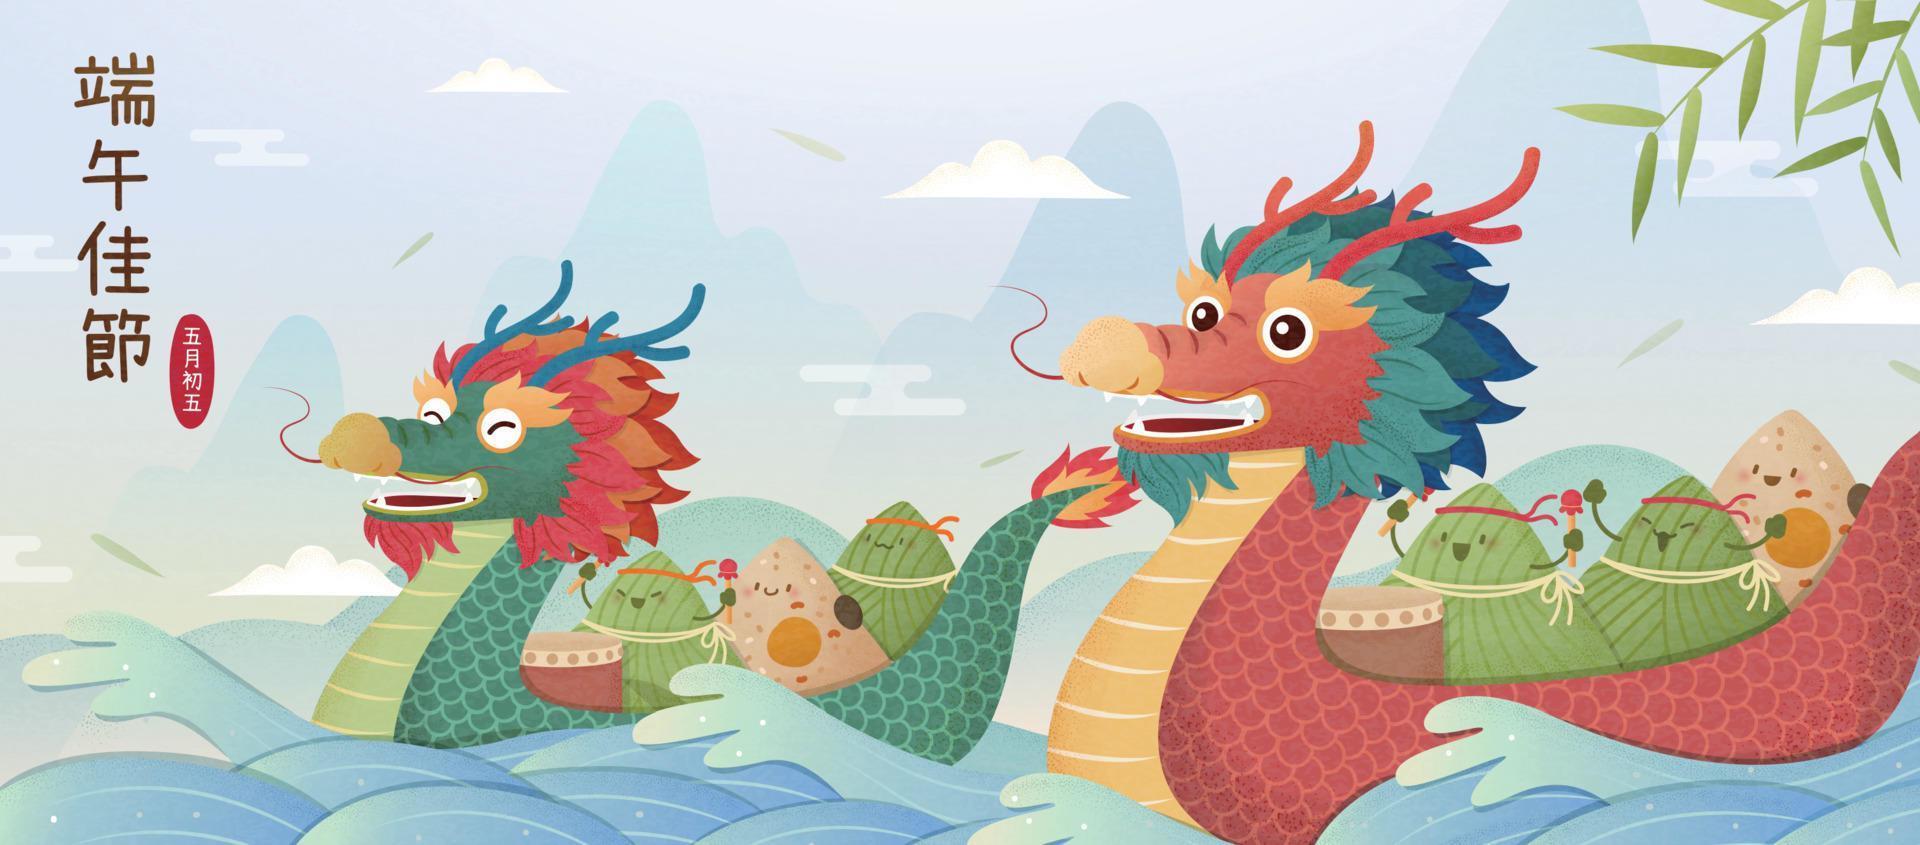 dibujos animados arroz empanadillas remo continuar barco a ganar el carrera, chino traducción, celebrar continuar barco festival, 5to mayo en lunar calendario vector